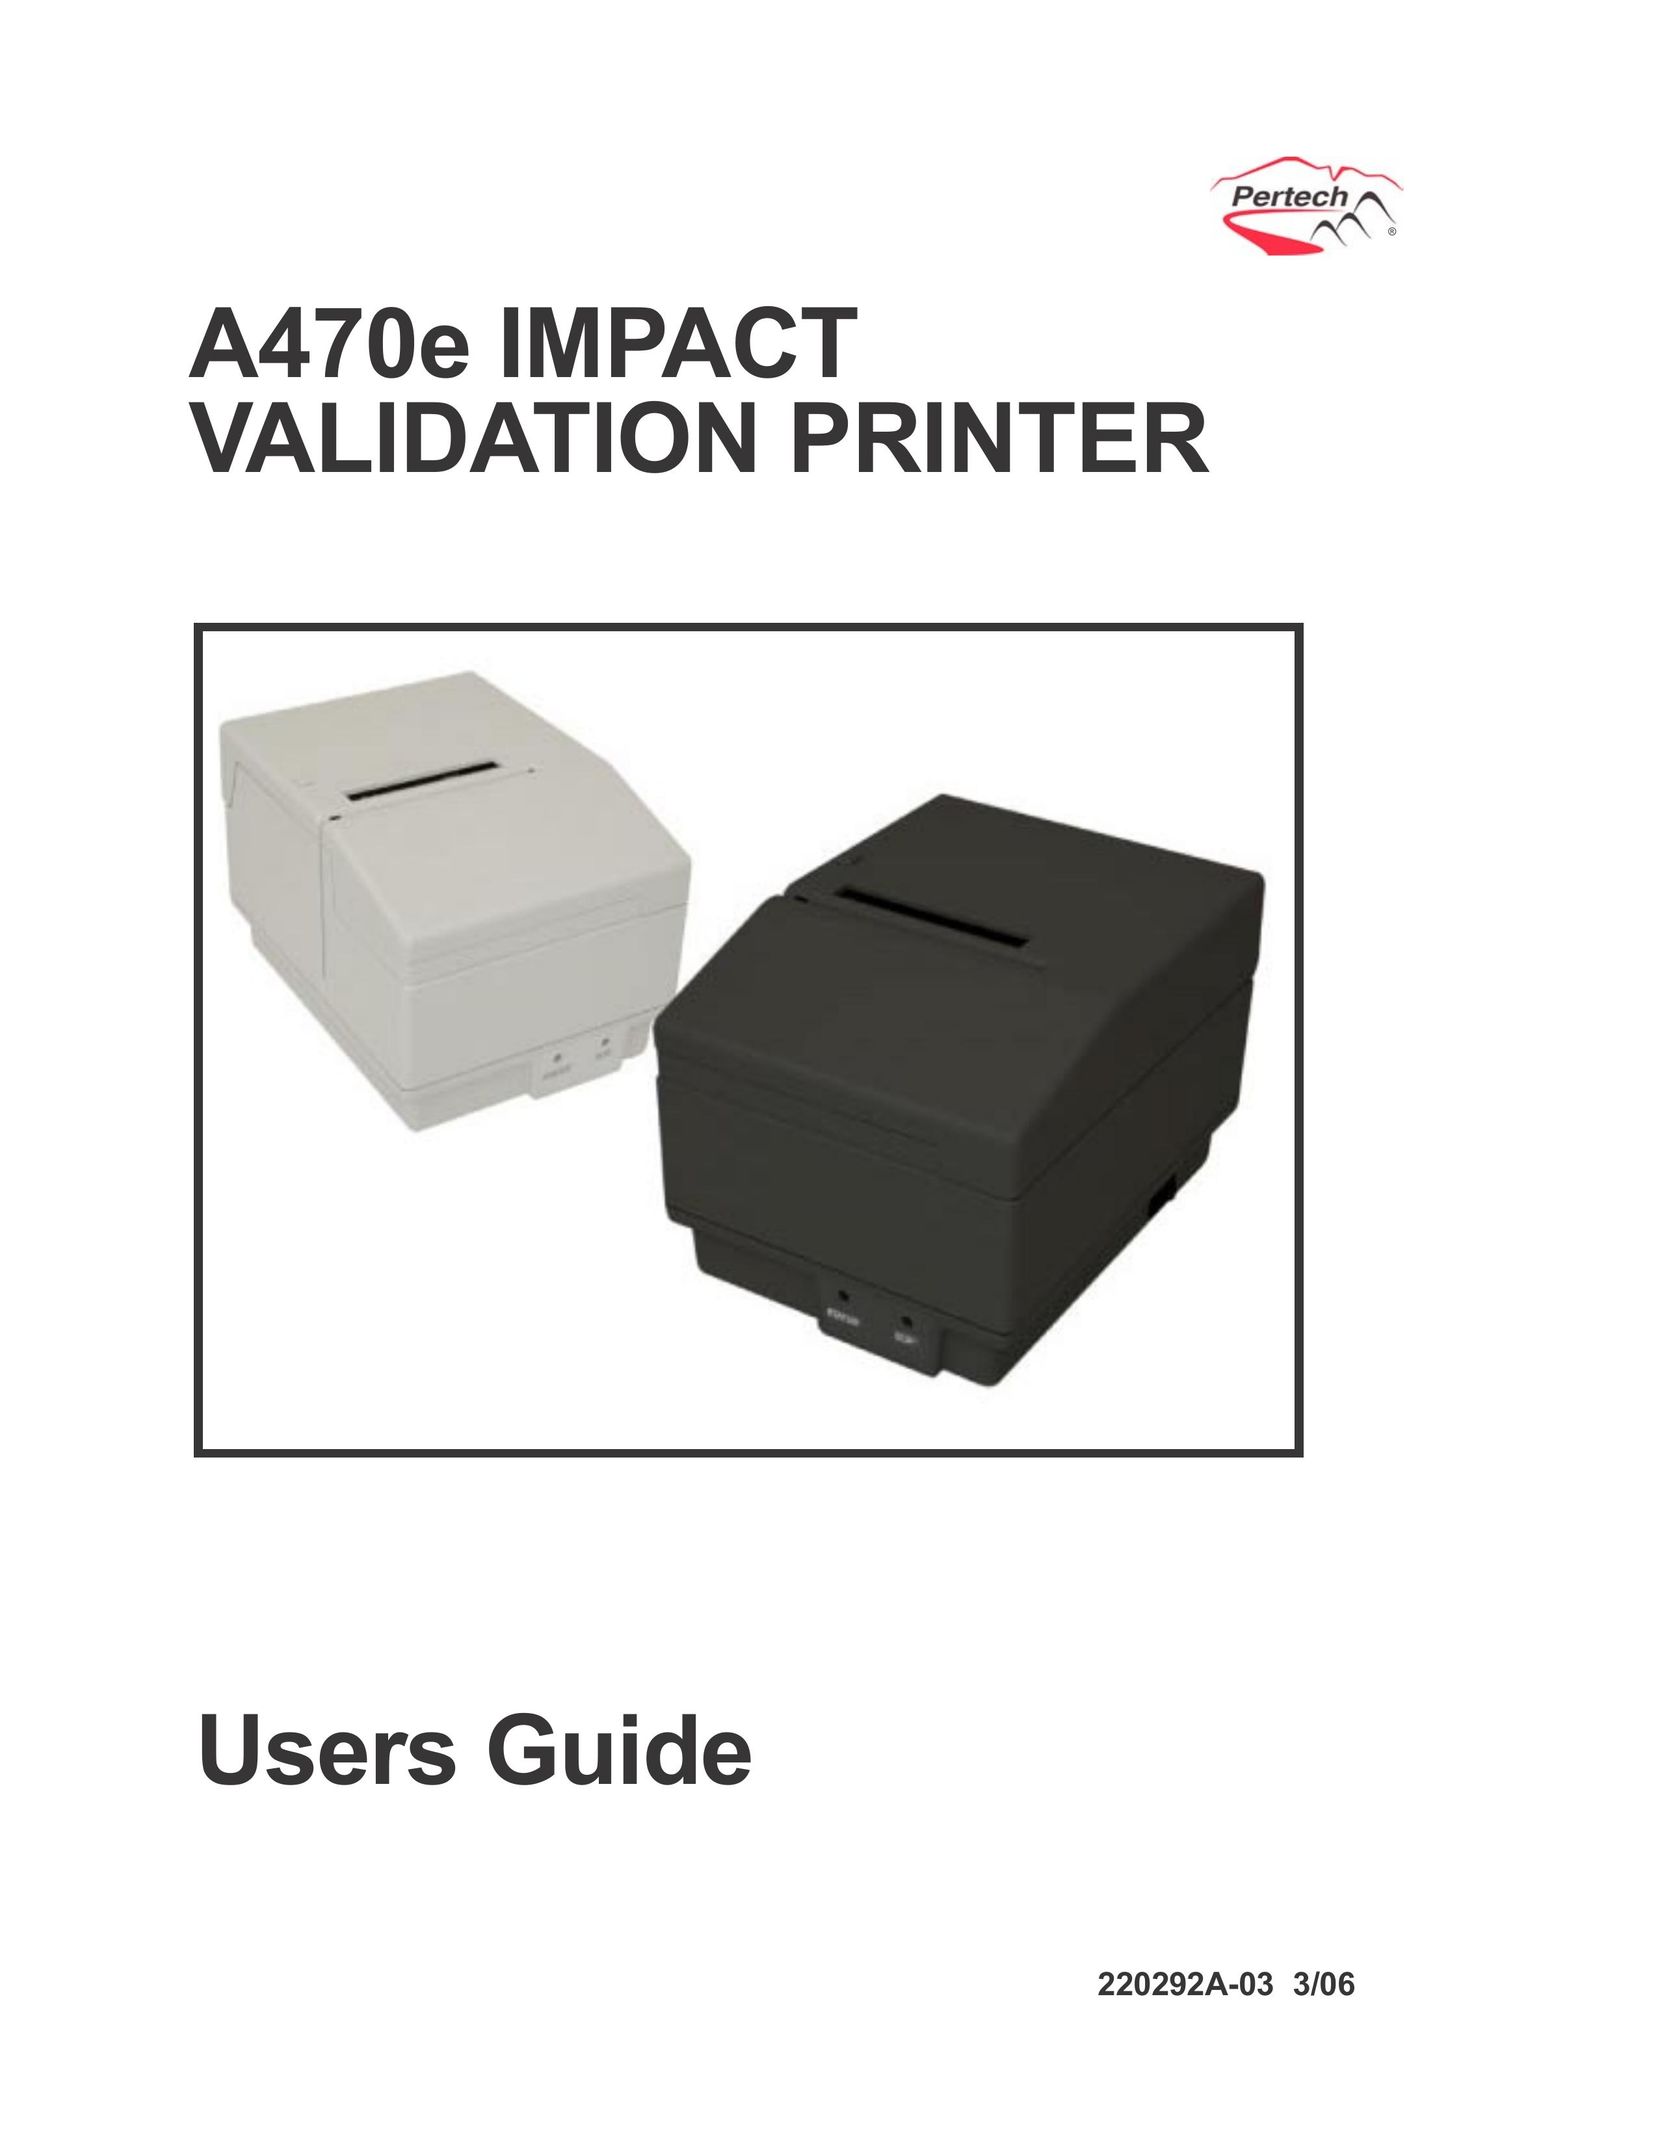 Pertech A470e Printer User Manual